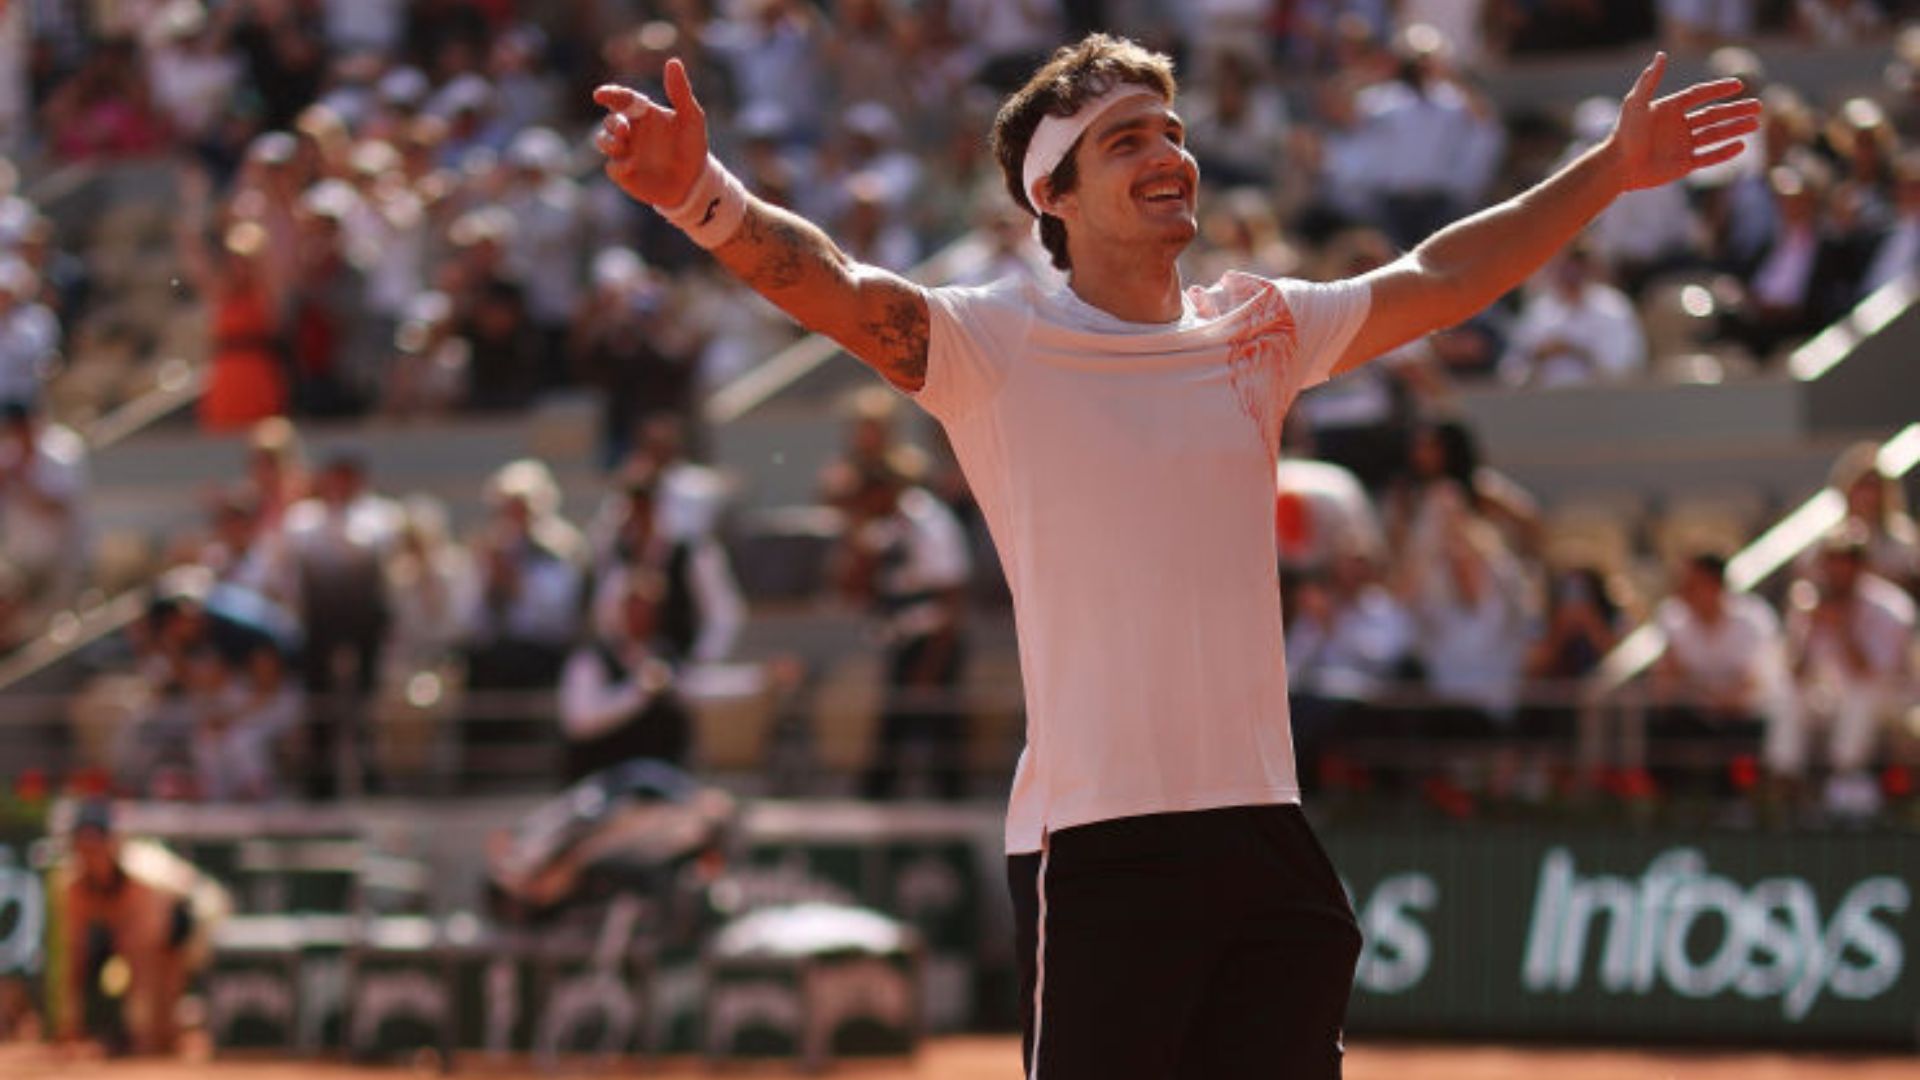 Thiago Wild faz história e vence Medvedev na estreia de Roland Garros, tênis